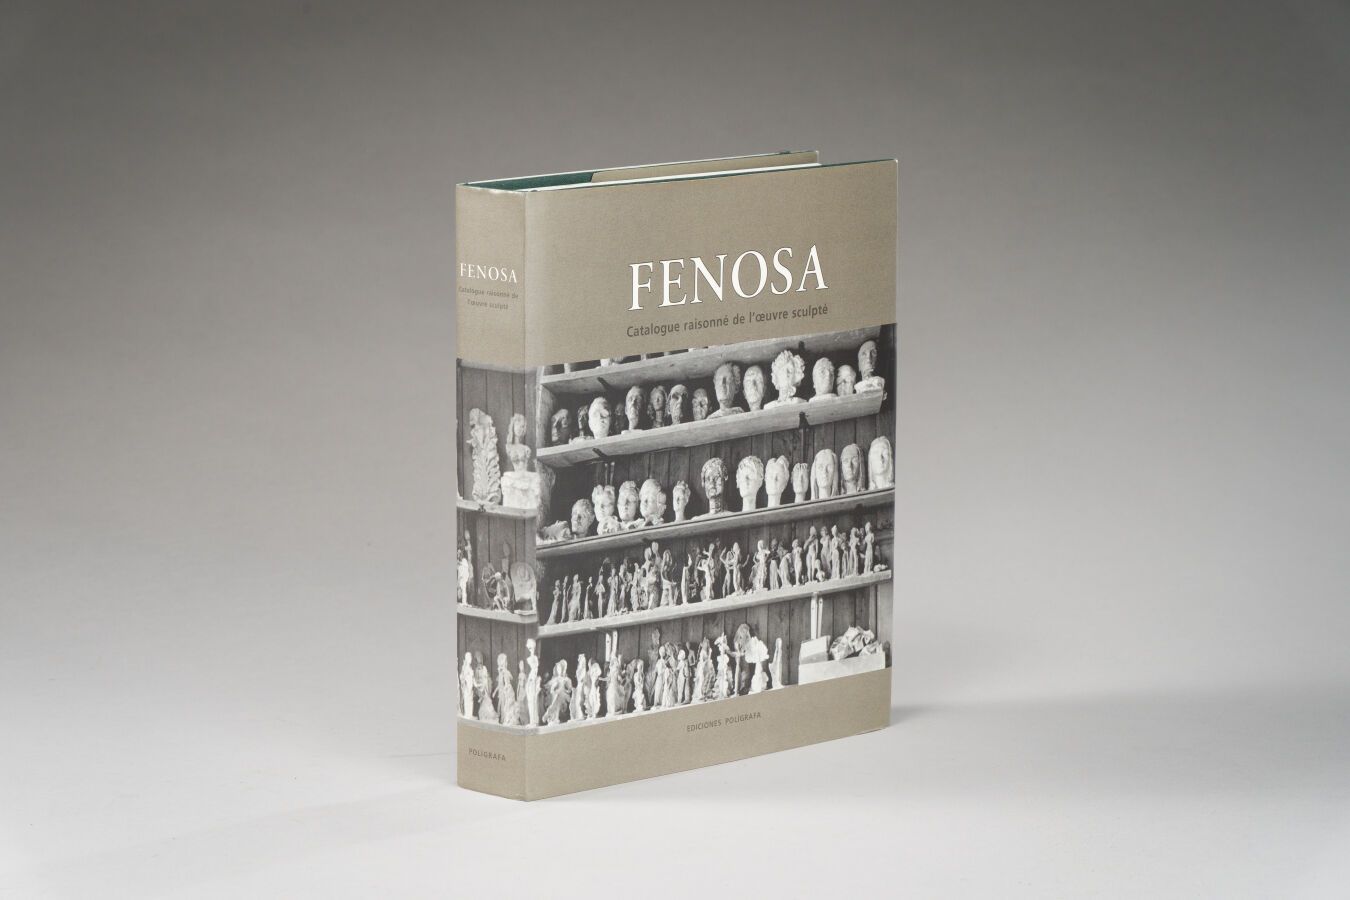 Null 3. FENOSA, Catalogue raisonné de l'oeuvre sculpté,

sous la direction de Ni&hellip;